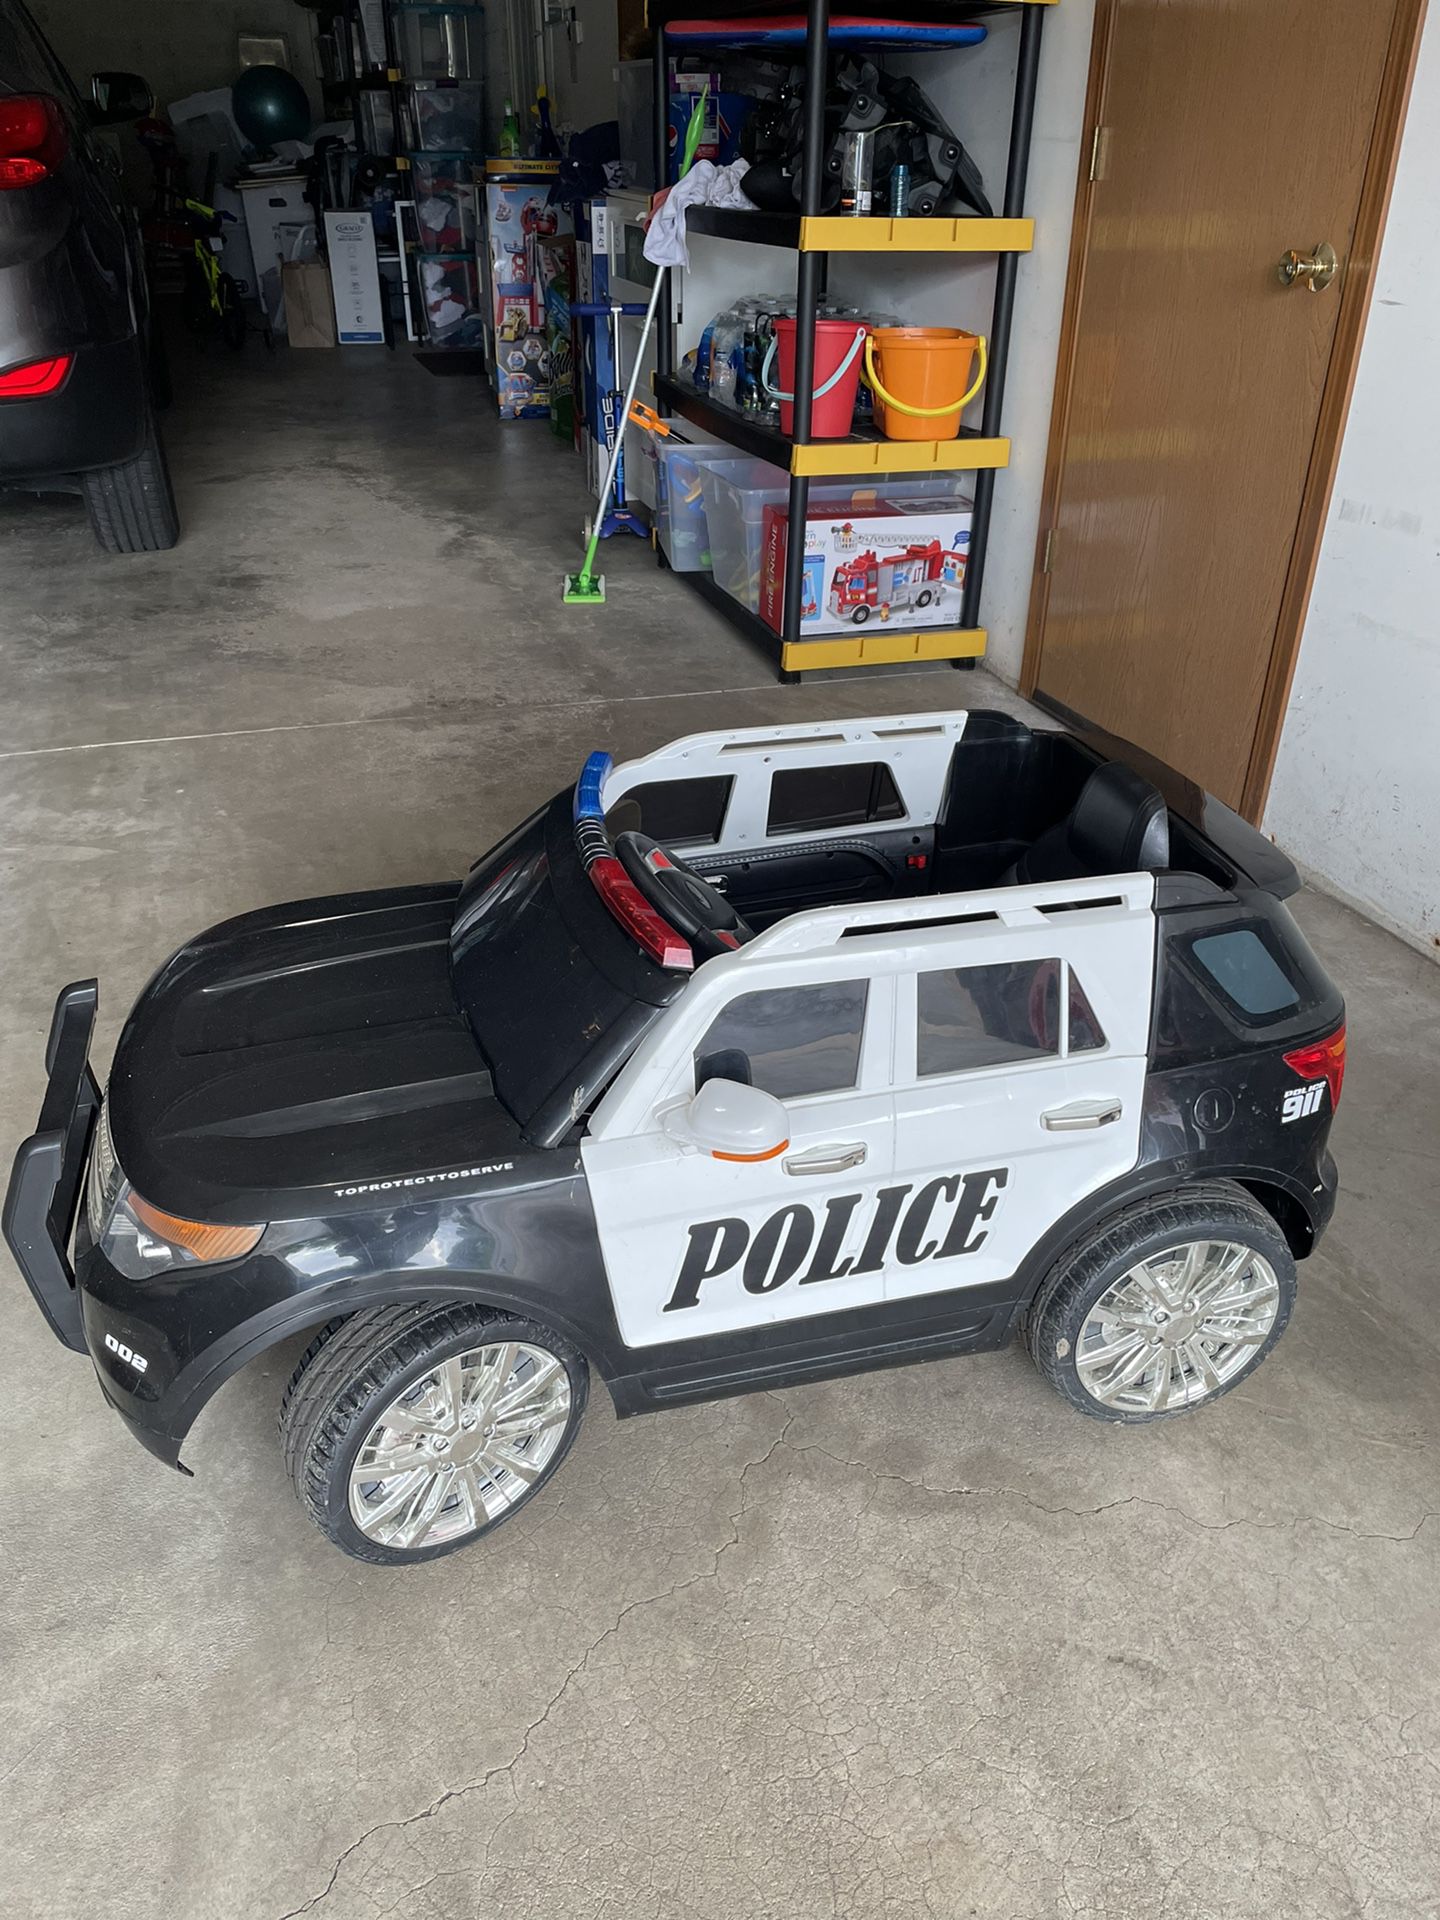 Police Car For Kids!!!